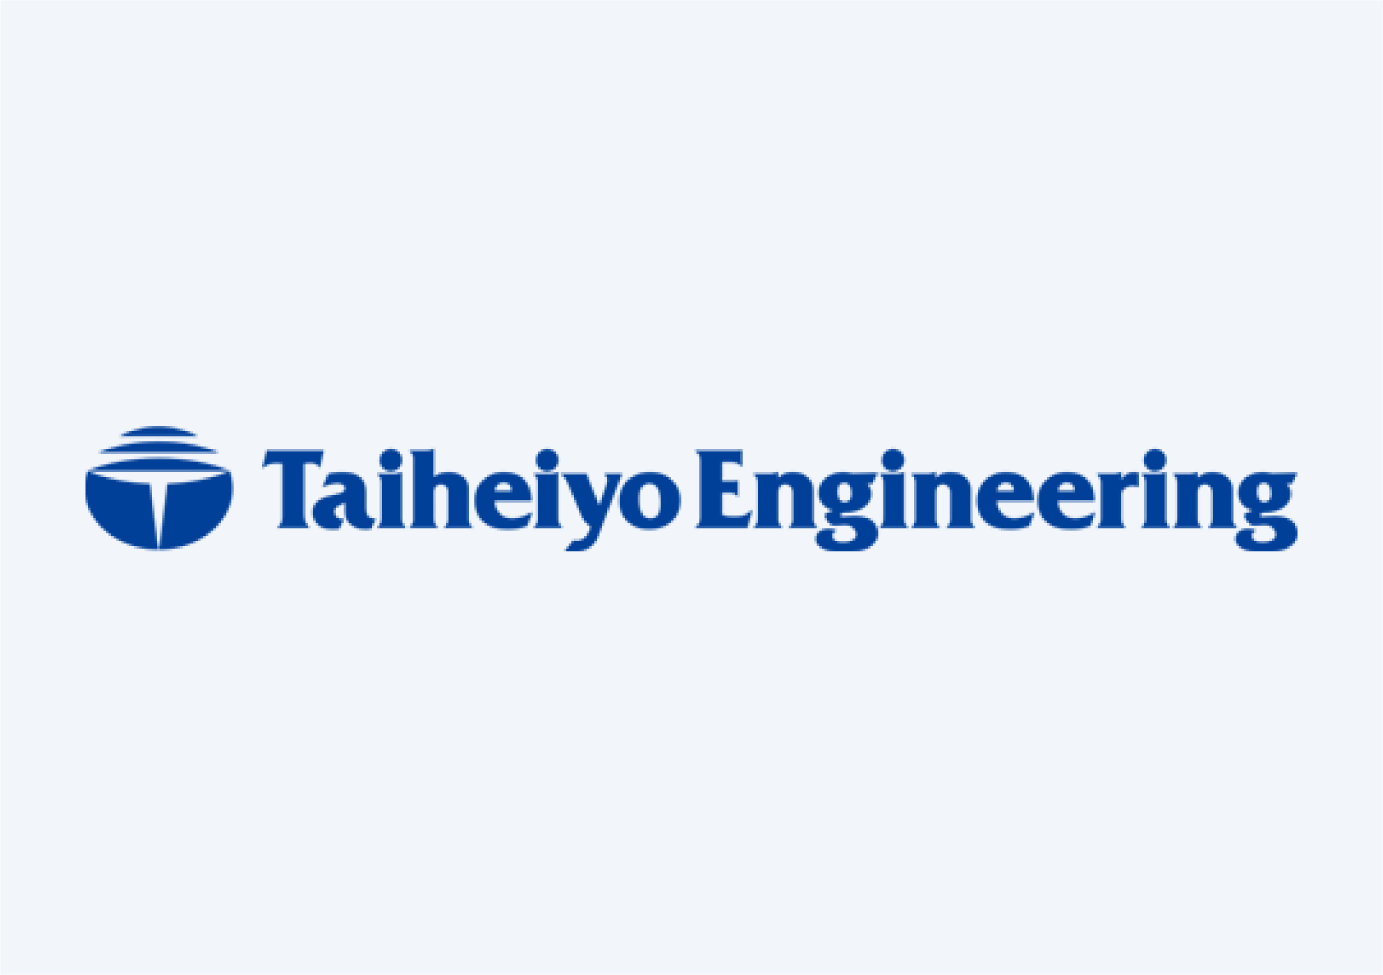 Taiheiyo Engineering